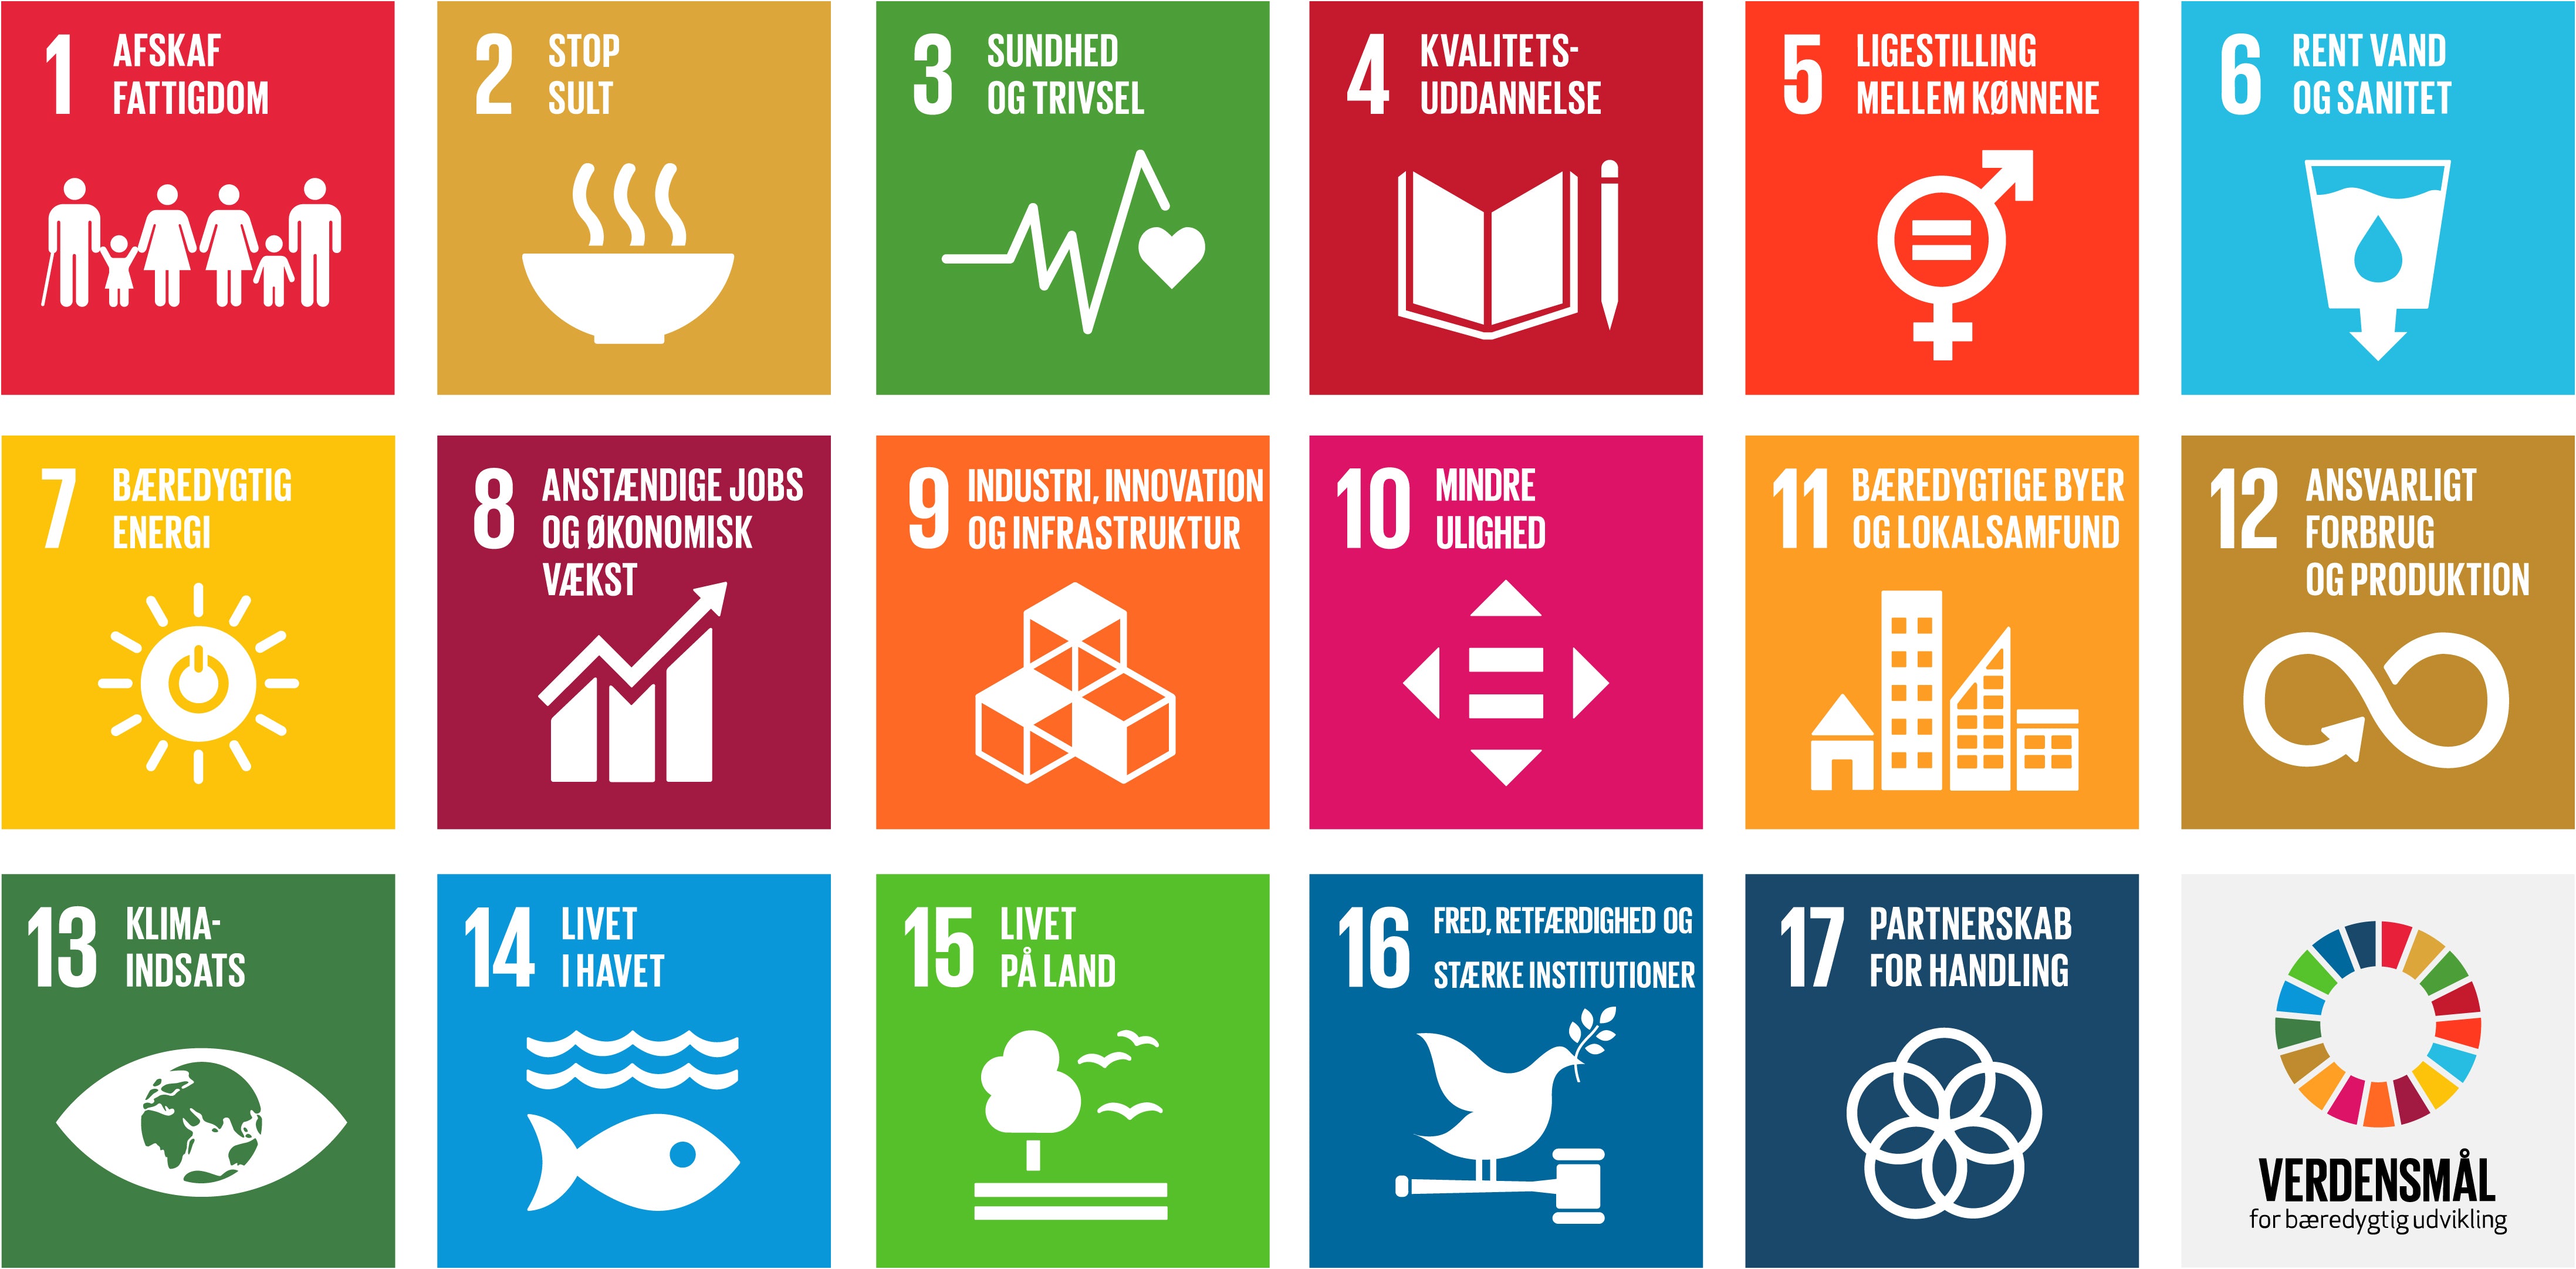 17 FN-verdensmål for bæredygtig udvikling